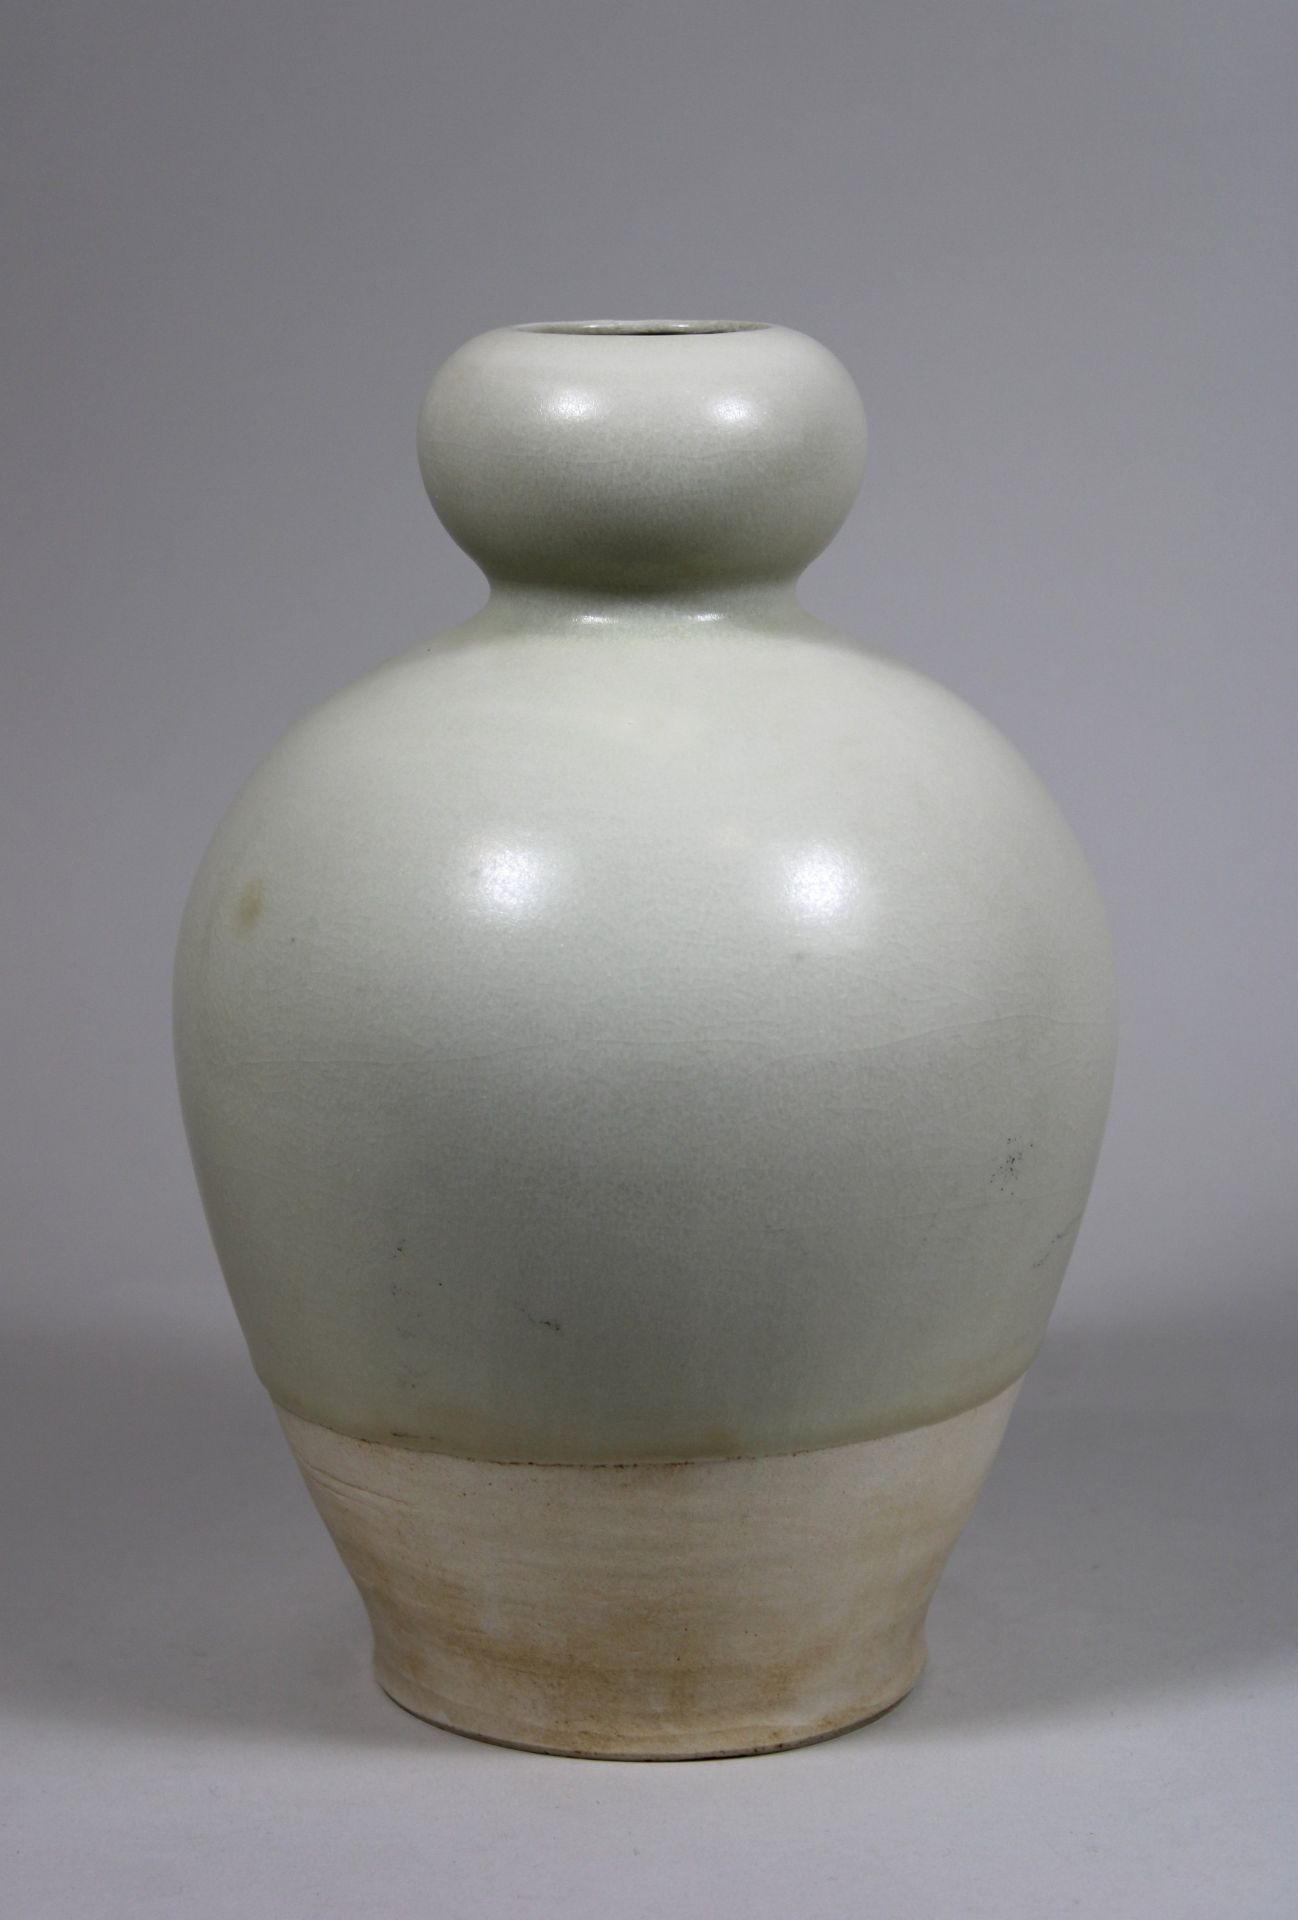 Vase, China, Porzellan, wohl 19. Jh., weiß glasiert. H.: 22 cm. Guter, altersbedingter Zustand.